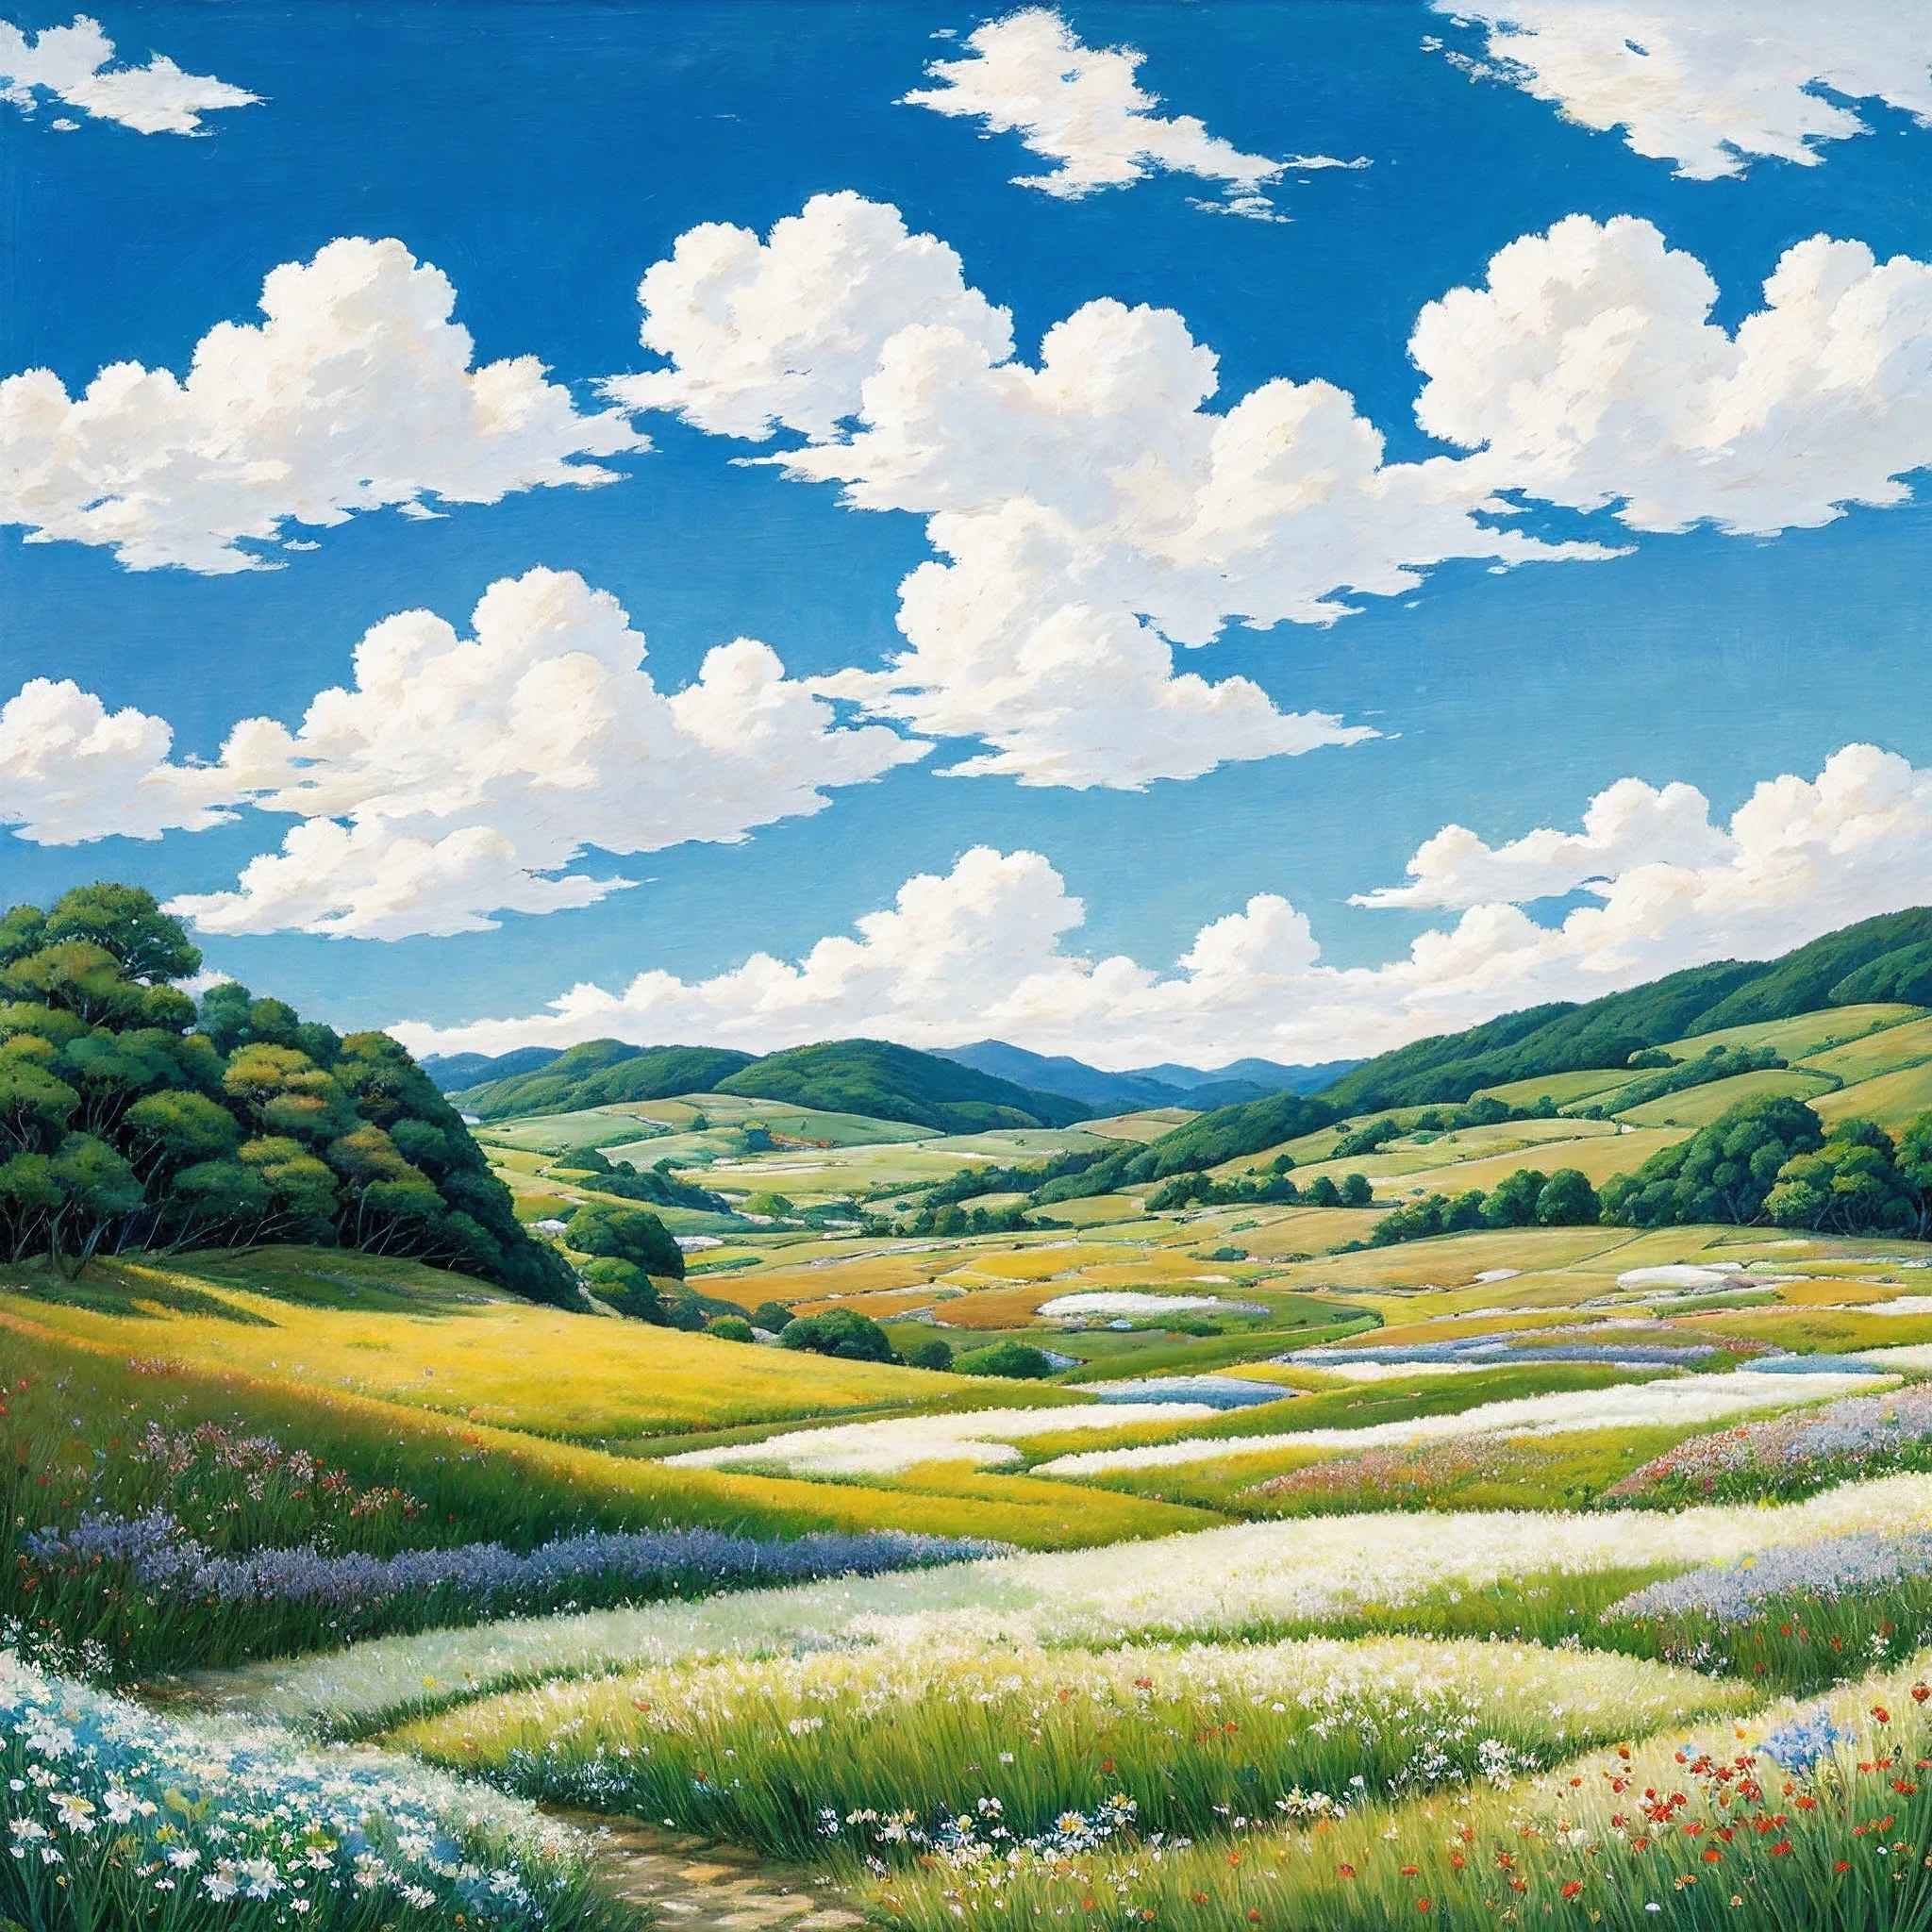 实际的, 真正的, 美丽而令人惊叹的风景油画宫崎骏吉卜力工作室&#39;蓝天白云的花瓣草原